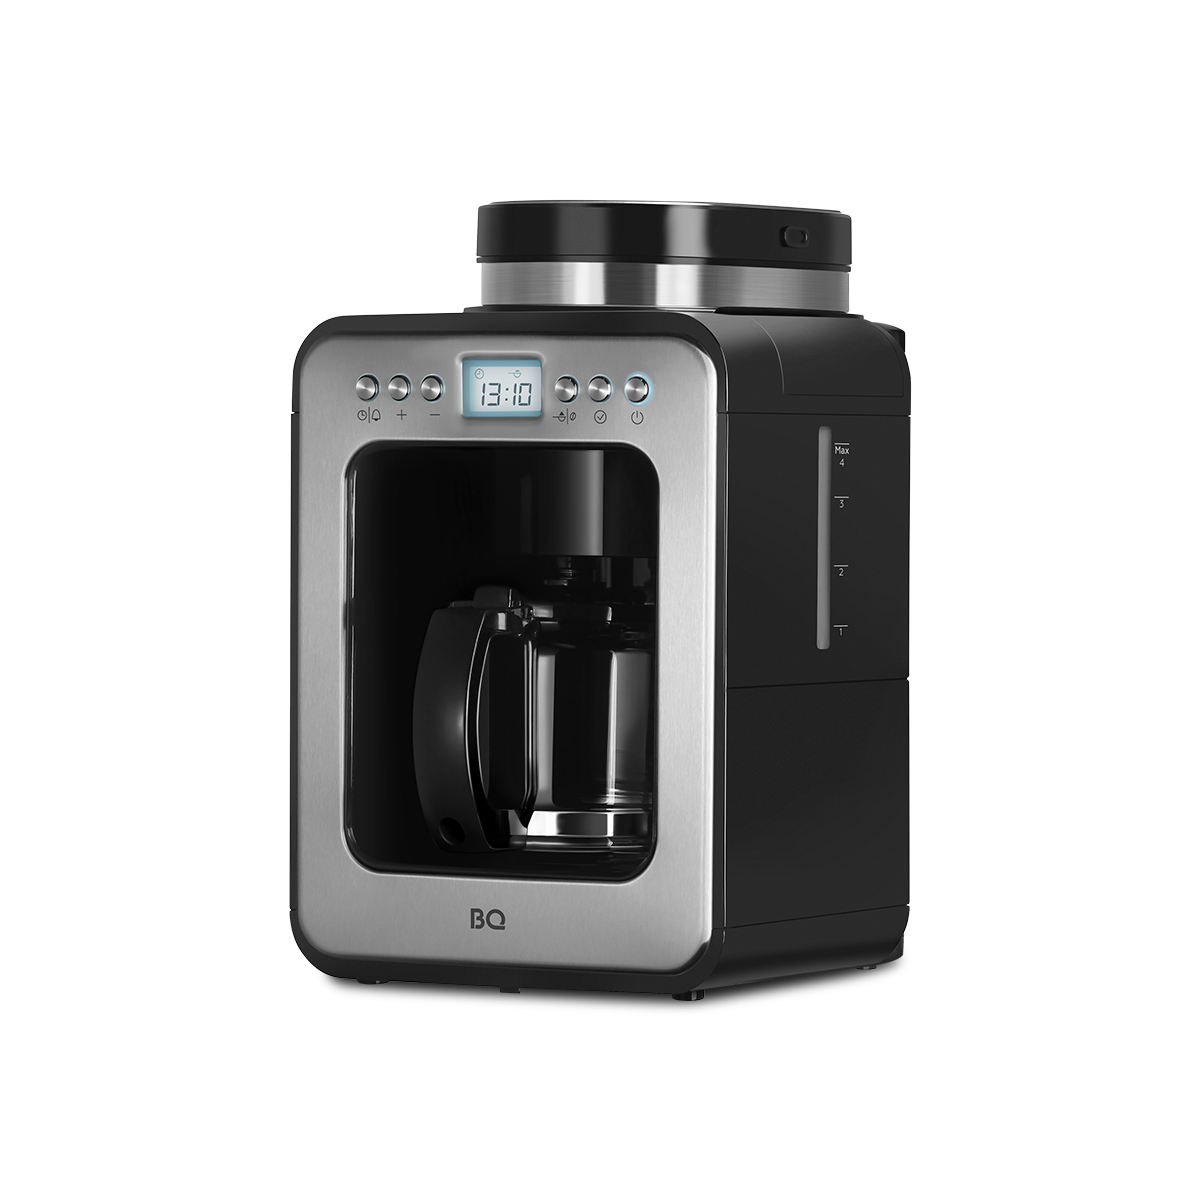 Кофеварка капельного типа BQ CM7001 серебристый, черный капельная кофеварка со встроенной кофемолкой bq cm7001 стальной